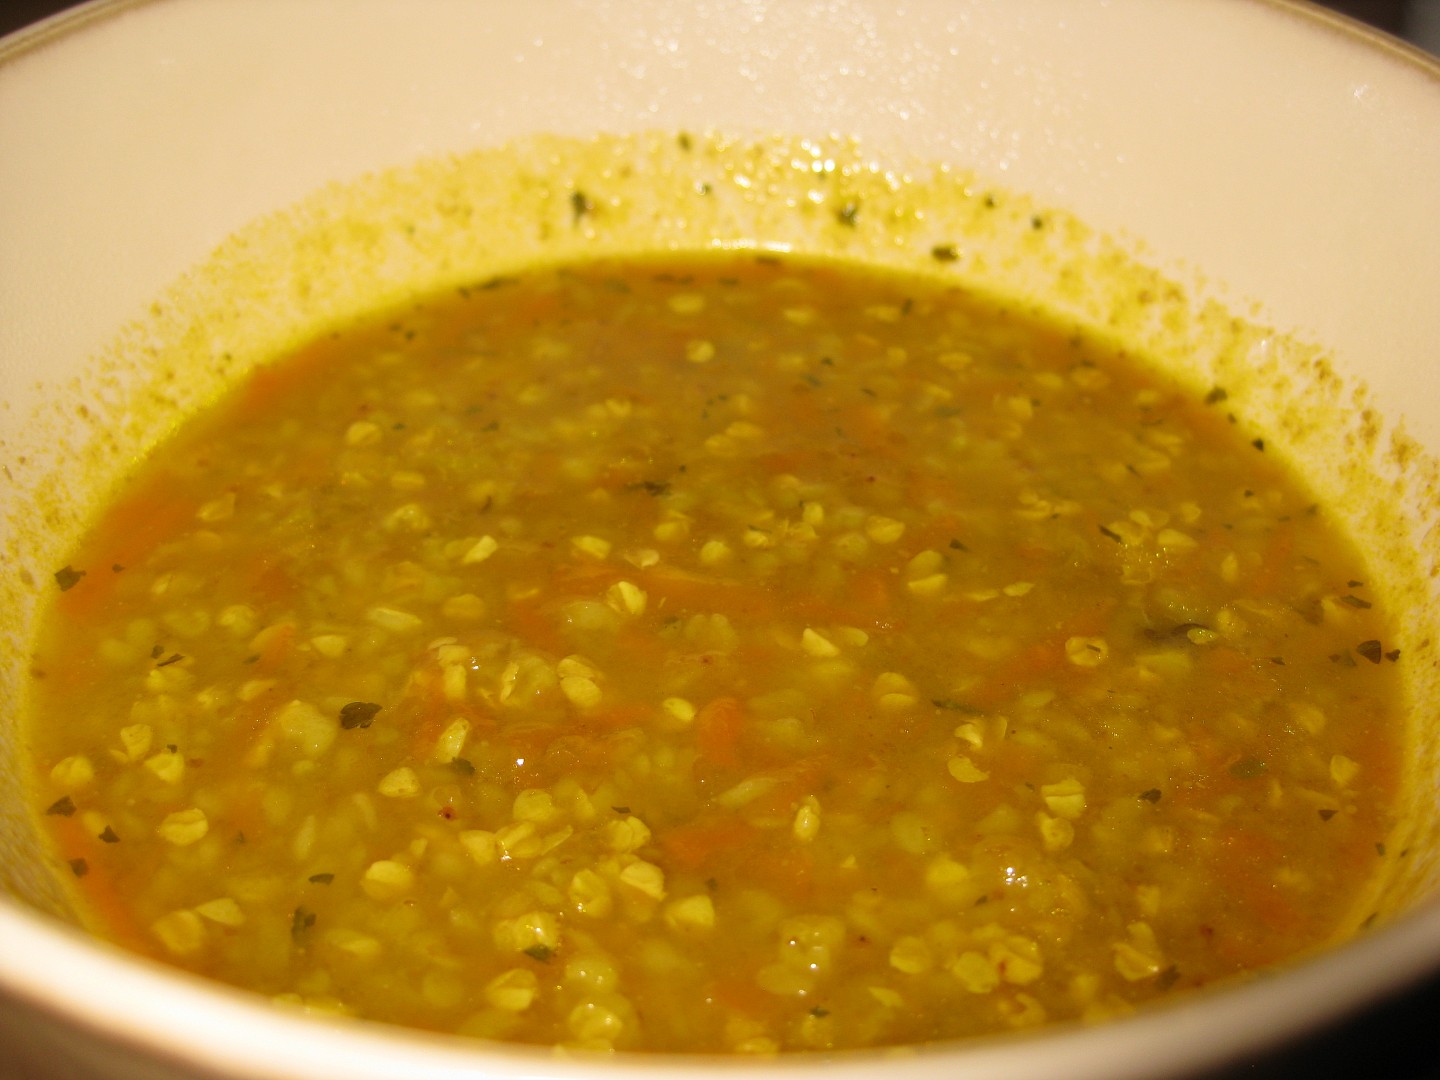 Pohanková polévka s mrkví